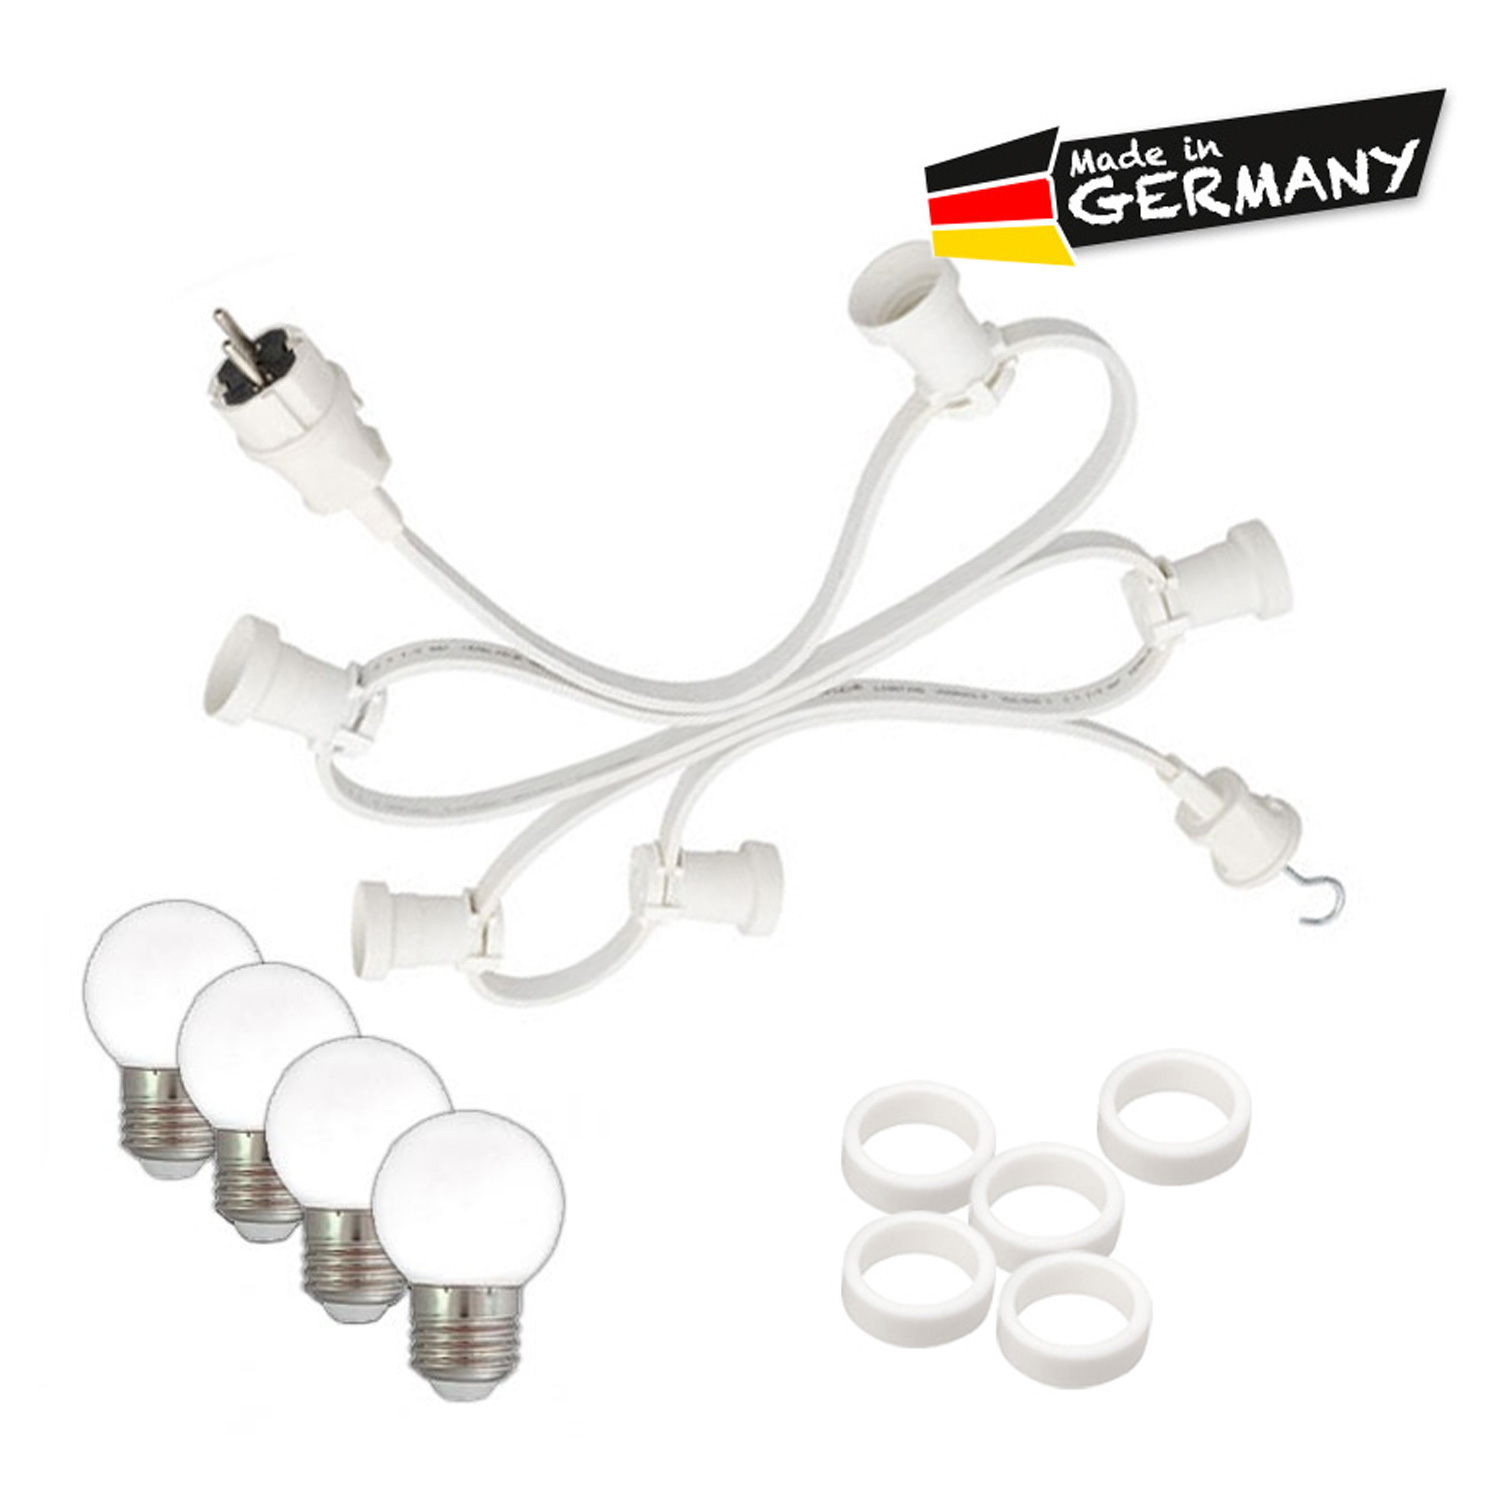 Illu-/Partylichterkette 50m - Außenlichterkette - Made in Germany - 50 x warmweiße LED Kugellampen